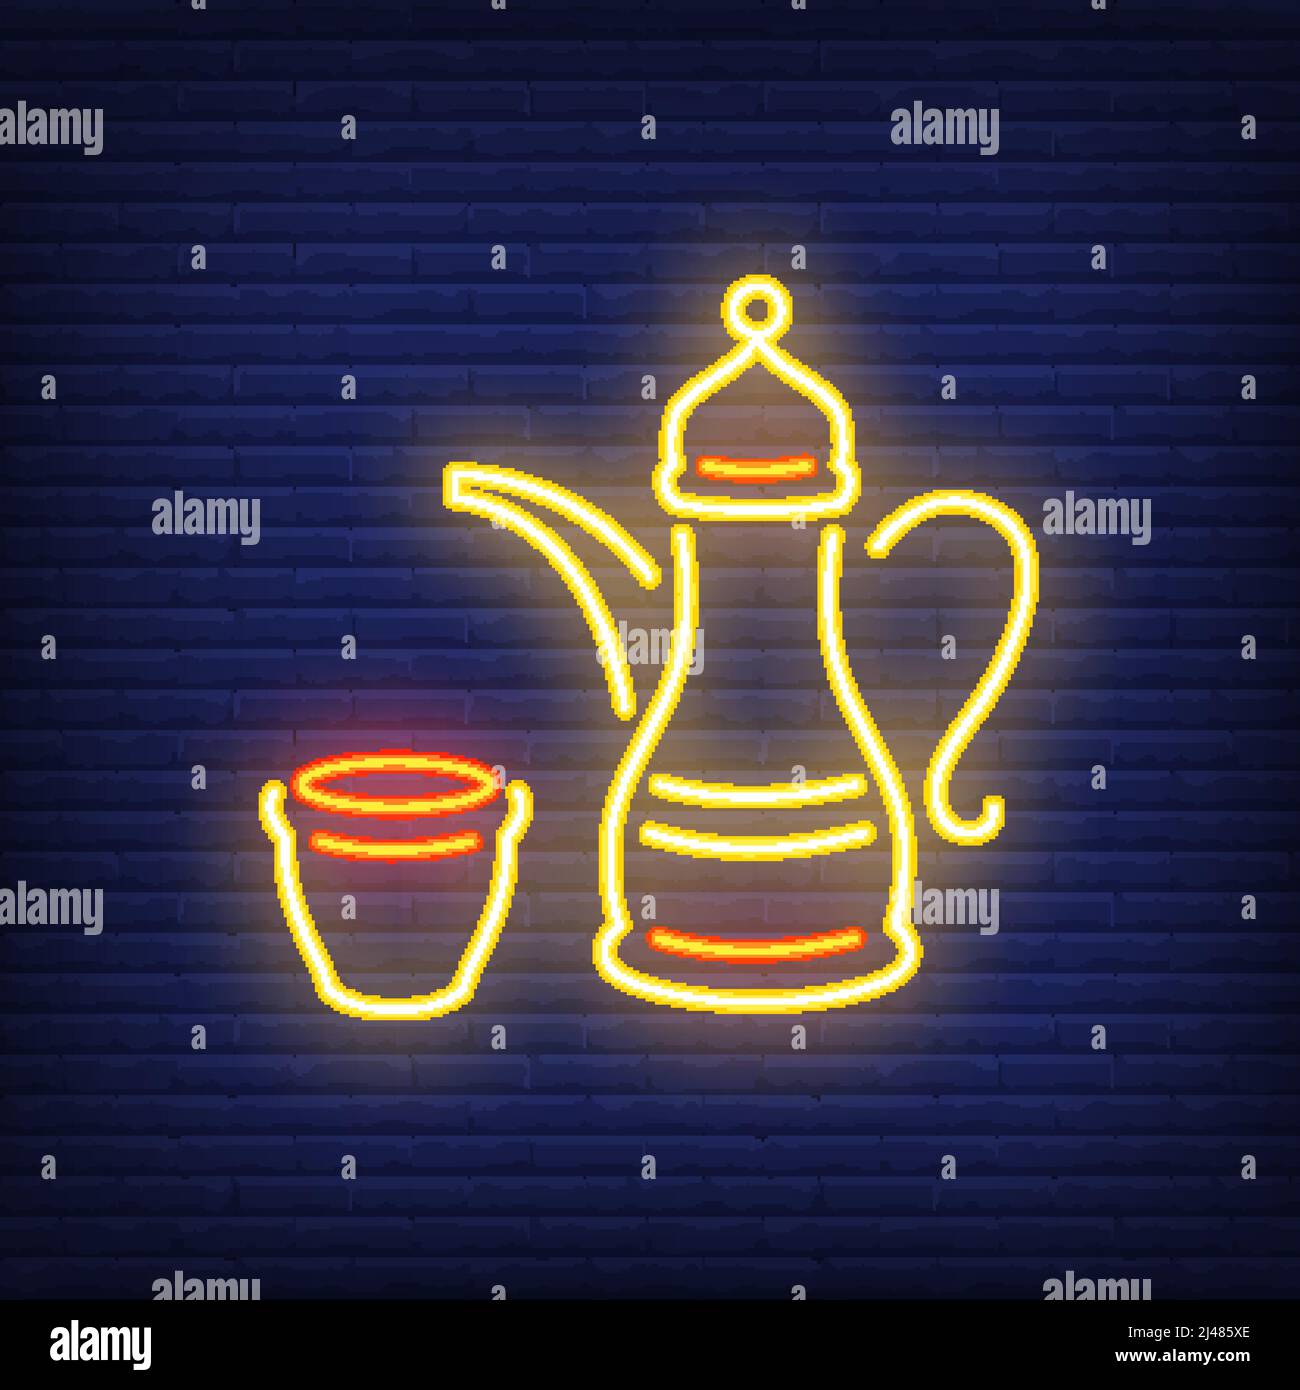 Arabisches Kaffee-Neonschild. Traditionelle Kaffeebecher symbolisieren Gastfreundschaft. Nächtliche Werbung. Vektorgrafik im Neon-Stil für Cafe oder Res Stock Vektor